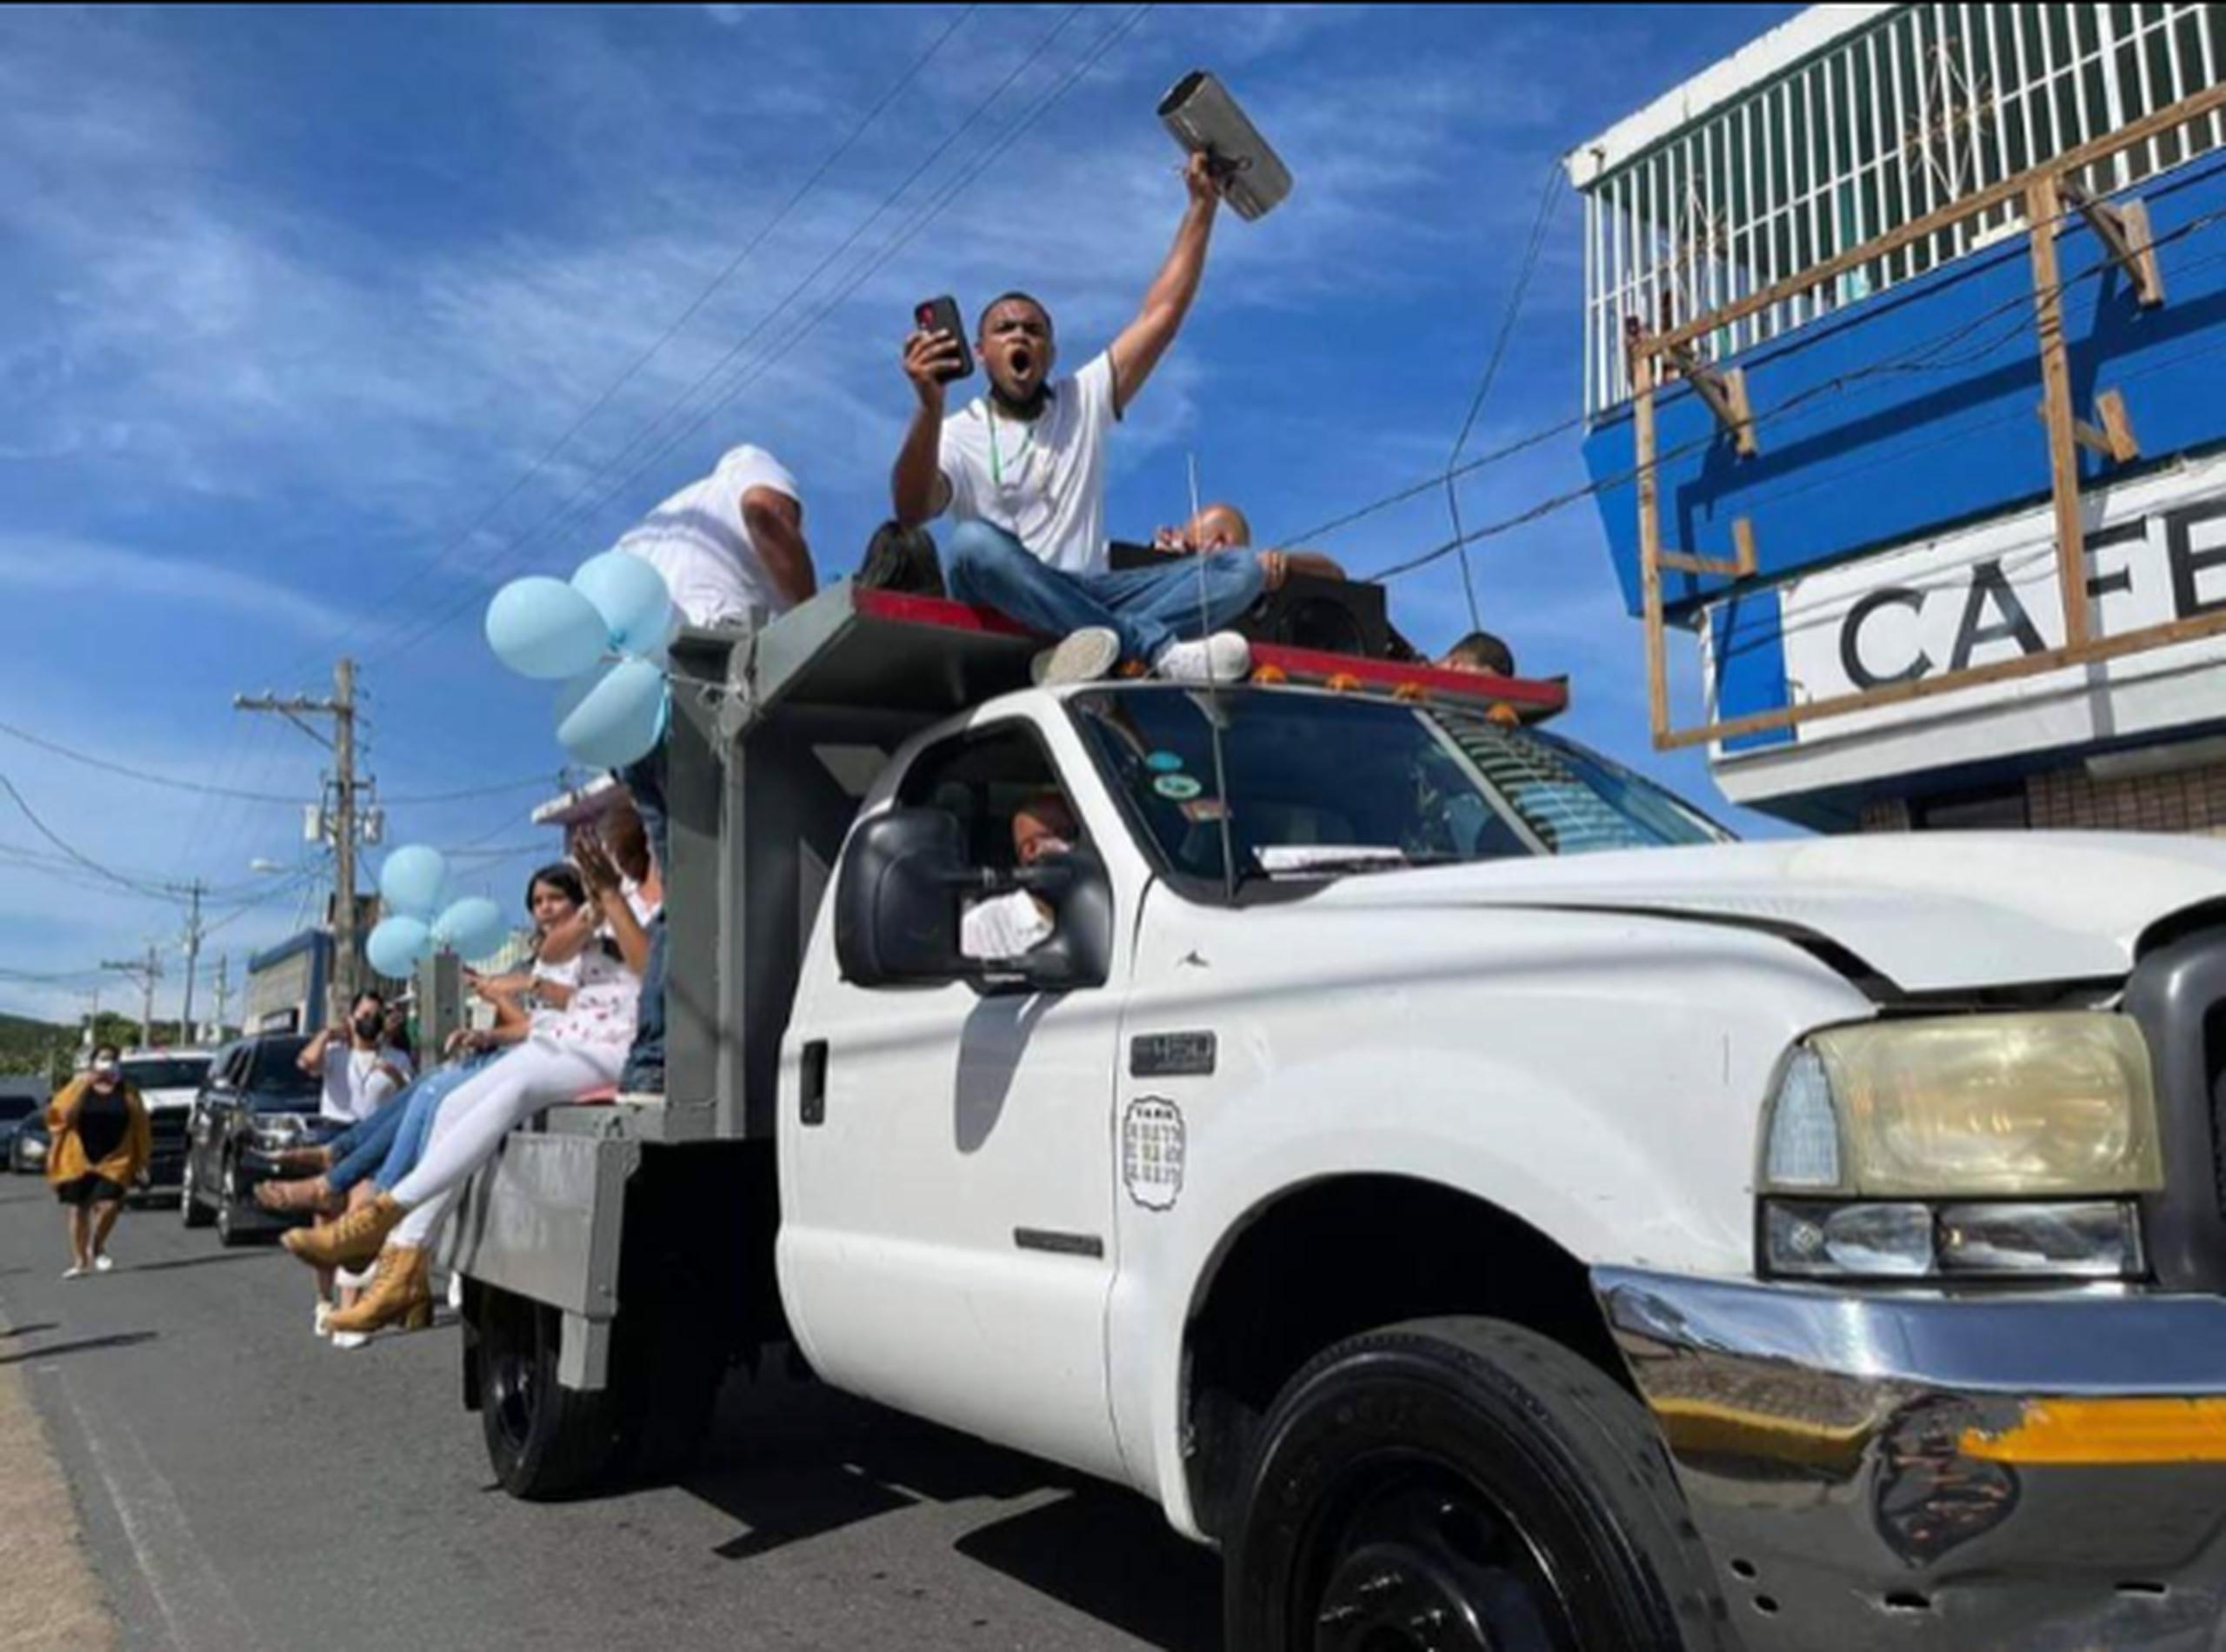 Las calles de Ceiba fueron invadidas hoy por la misma música y algarabía que caracterizaron al camionero, quien falleció la semana pasada por COVID-19.